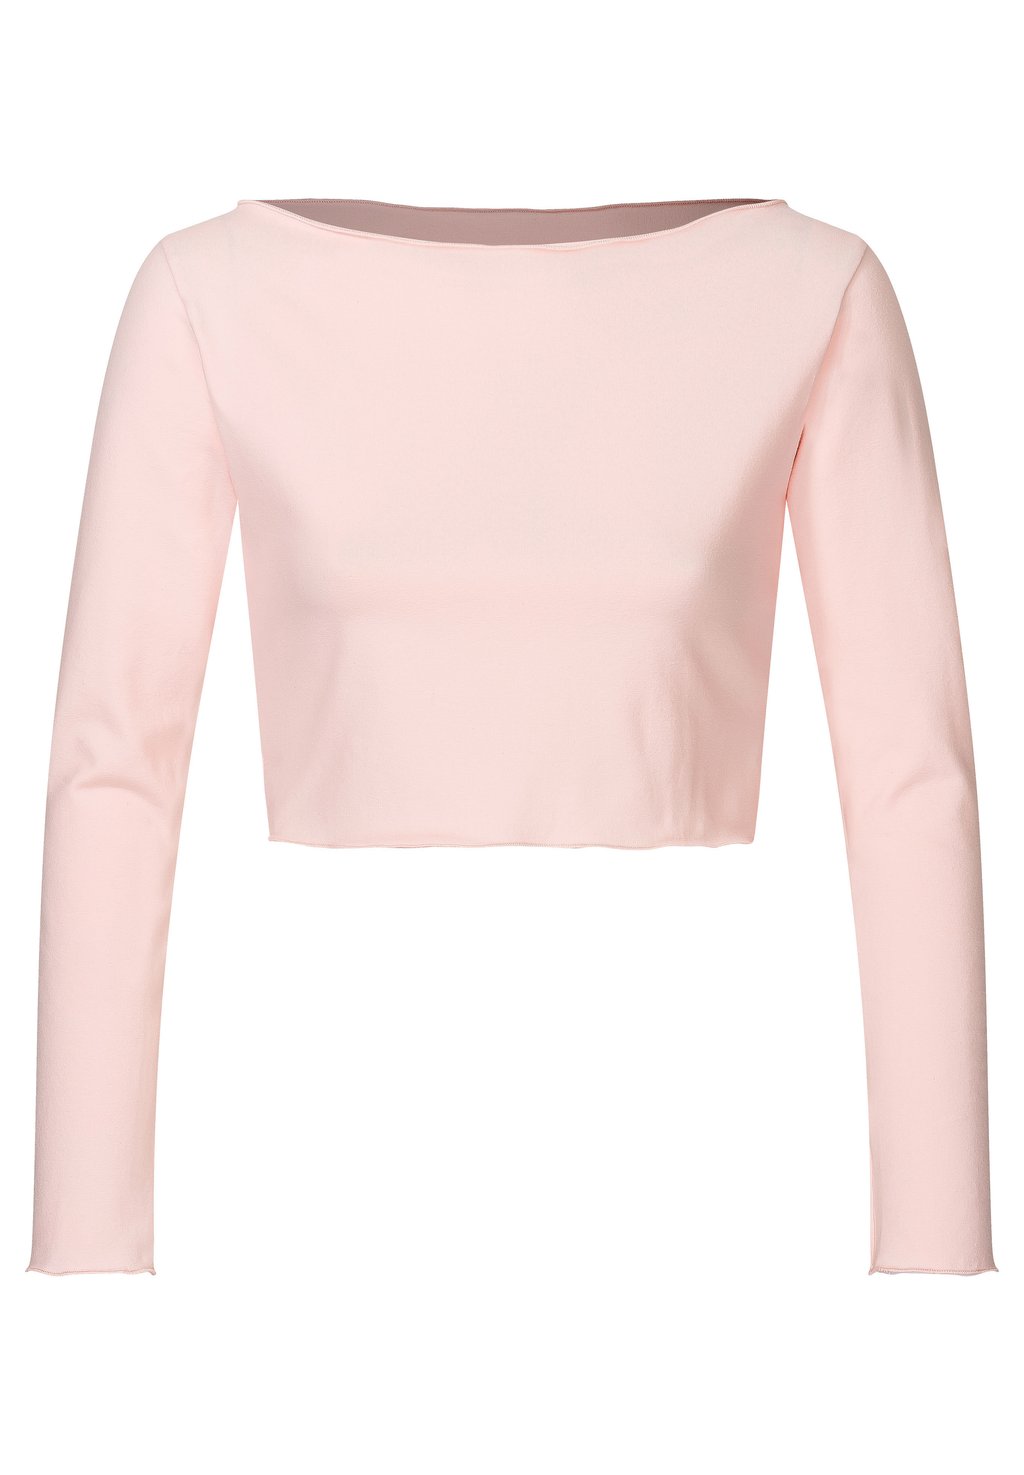 Рубашка с длинным рукавом BALLETT AYLIN Tanzmuster, цвет ballett rosa